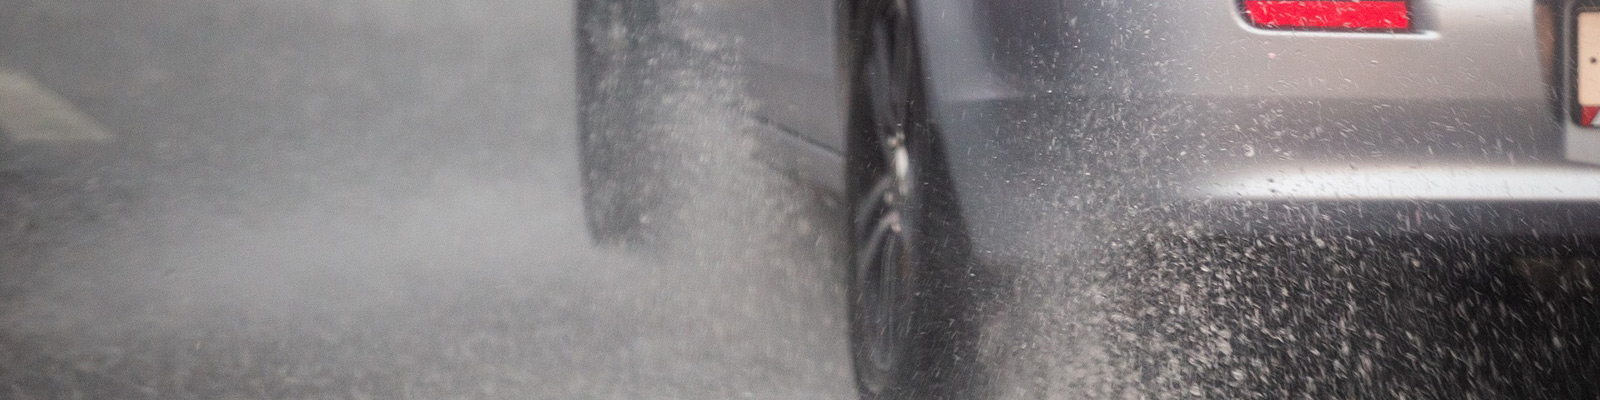 car wheels on road splashing up water